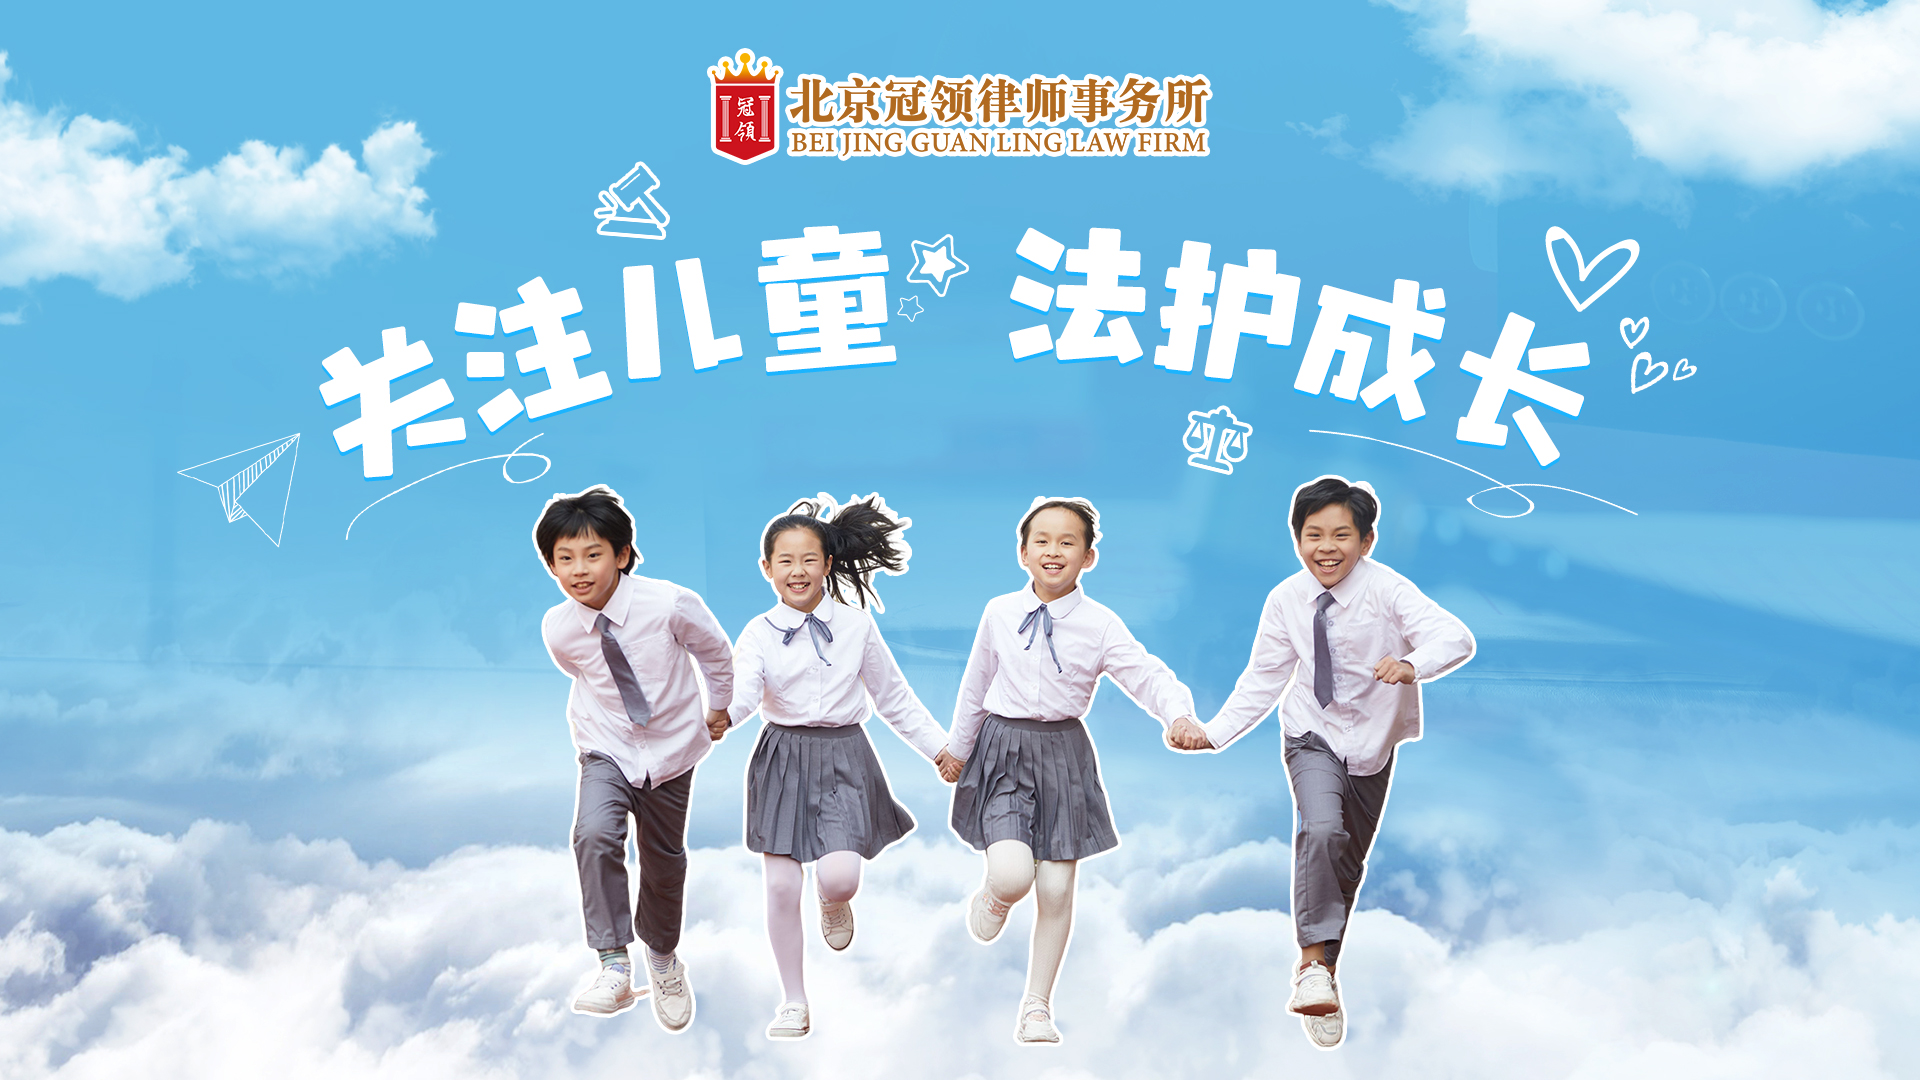 北京冠领律师事务所发布儿童节普法视频